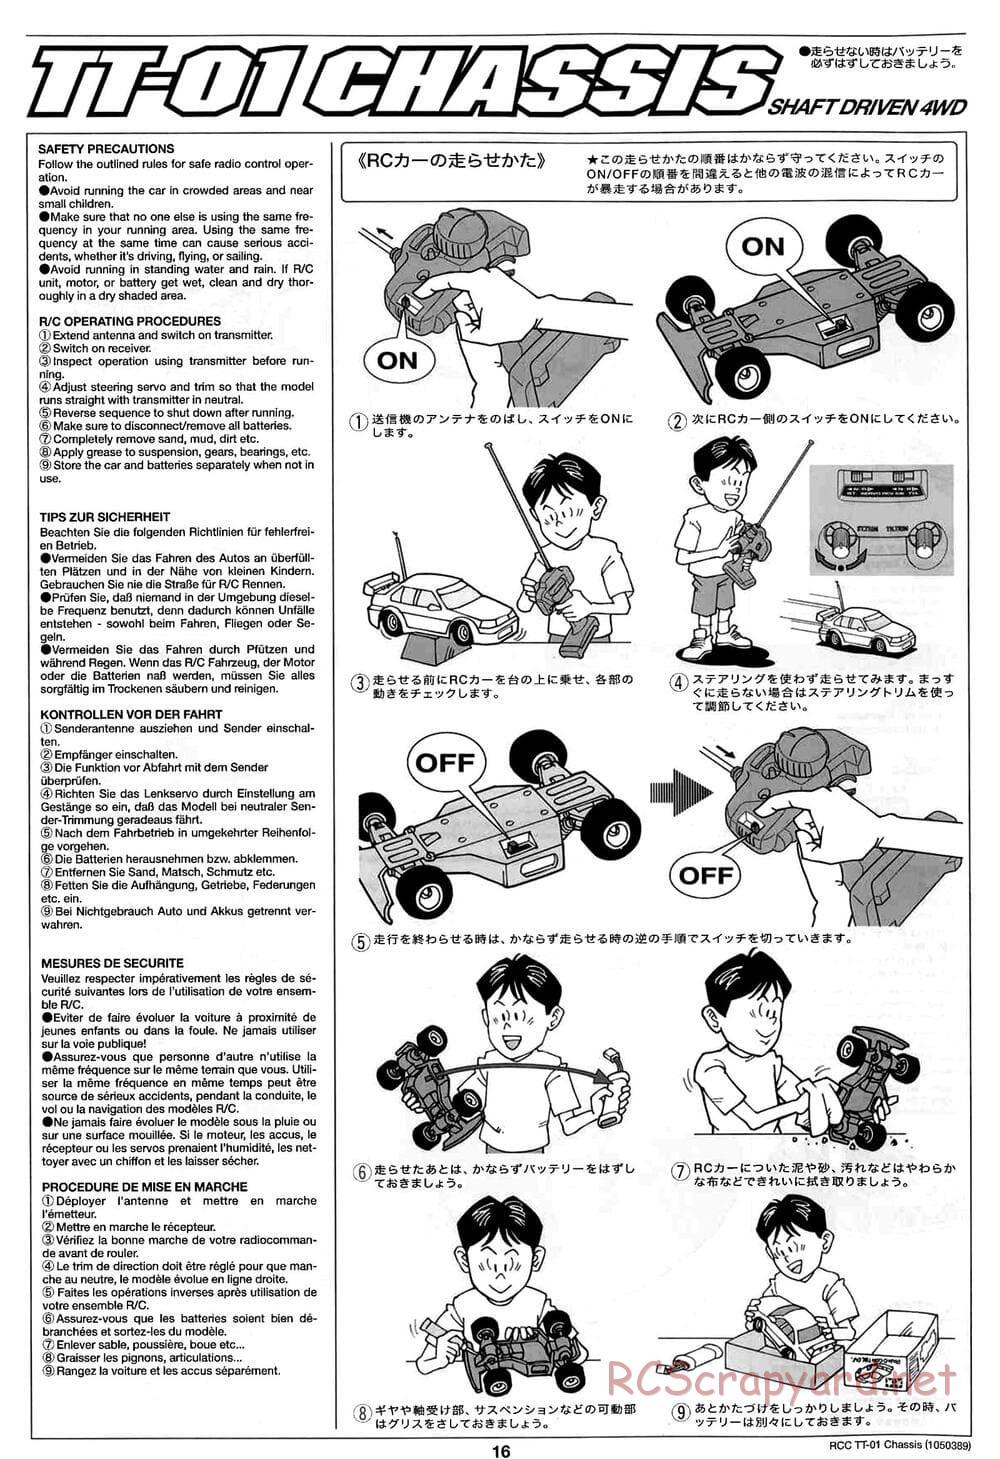 Tamiya - TT-01 Chassis - Manual - Page 16